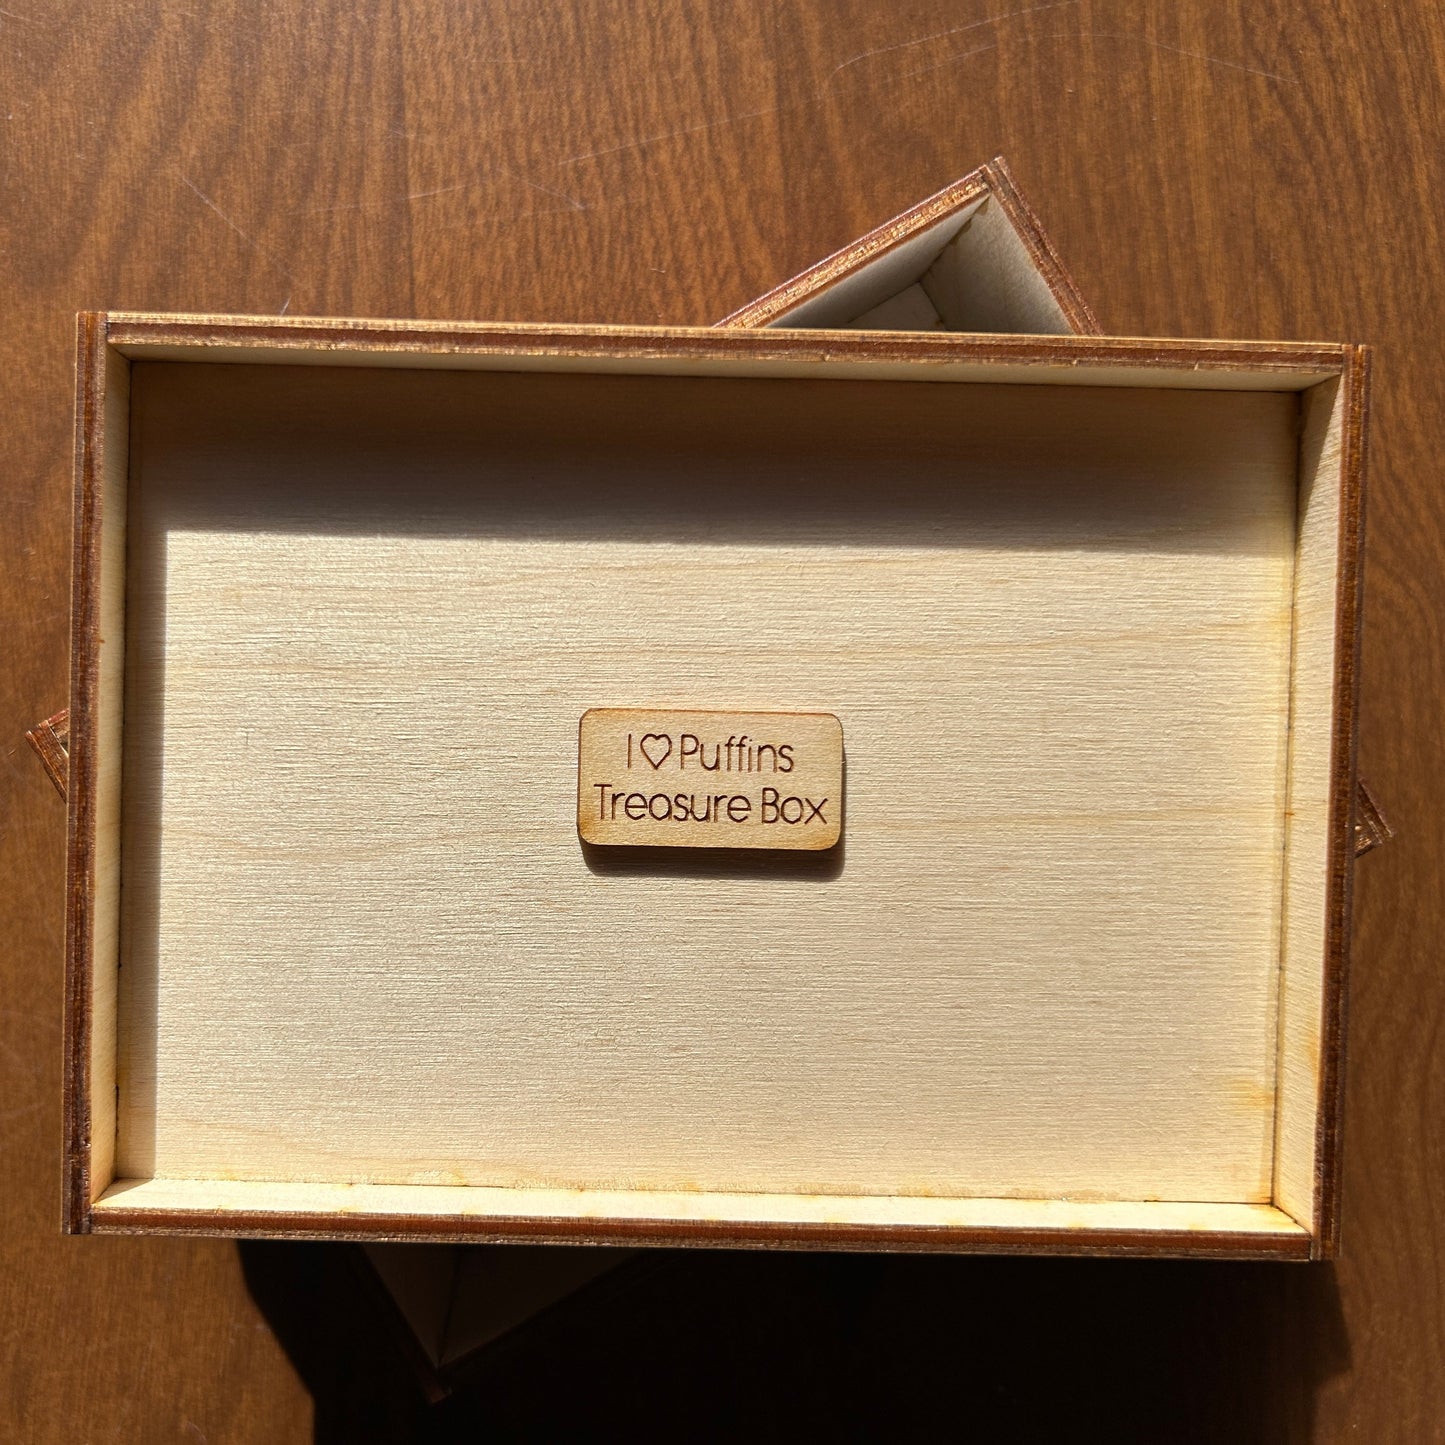 I love Puffins Treasure Box